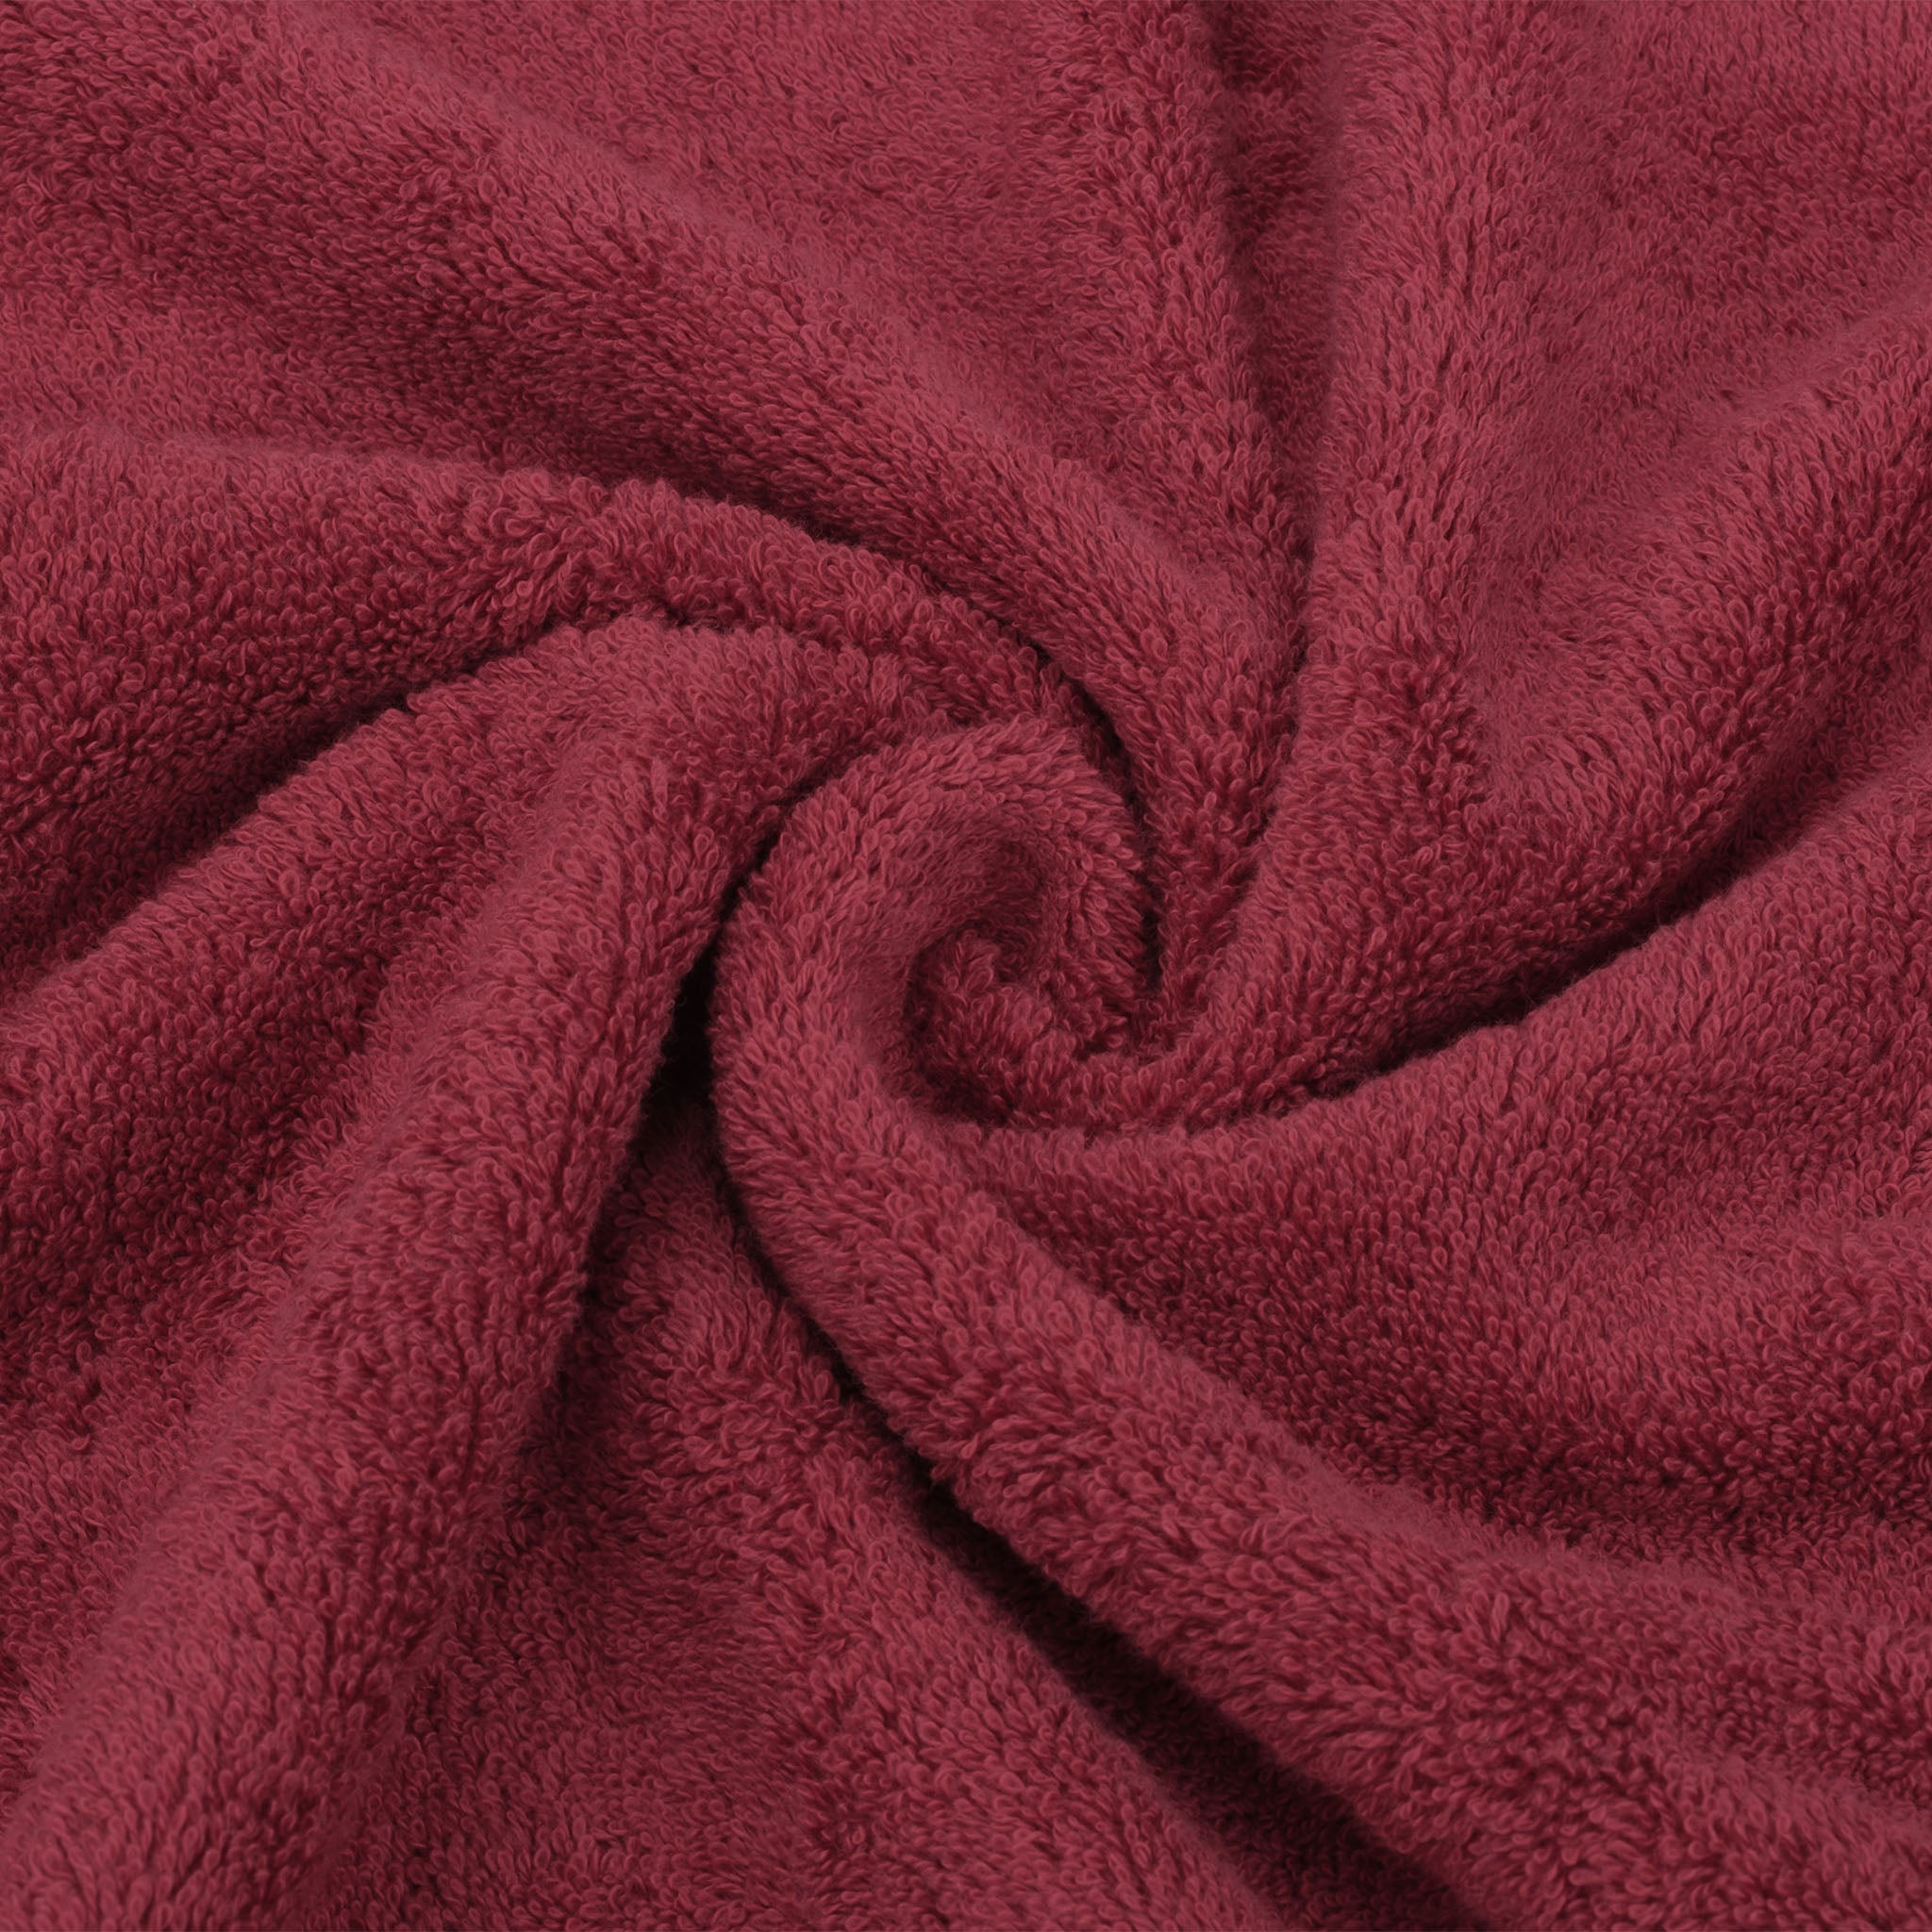 American Soft Linen 3 Piece Luxury Hotel Towel Set 20 set case pack bordeaux-red-7